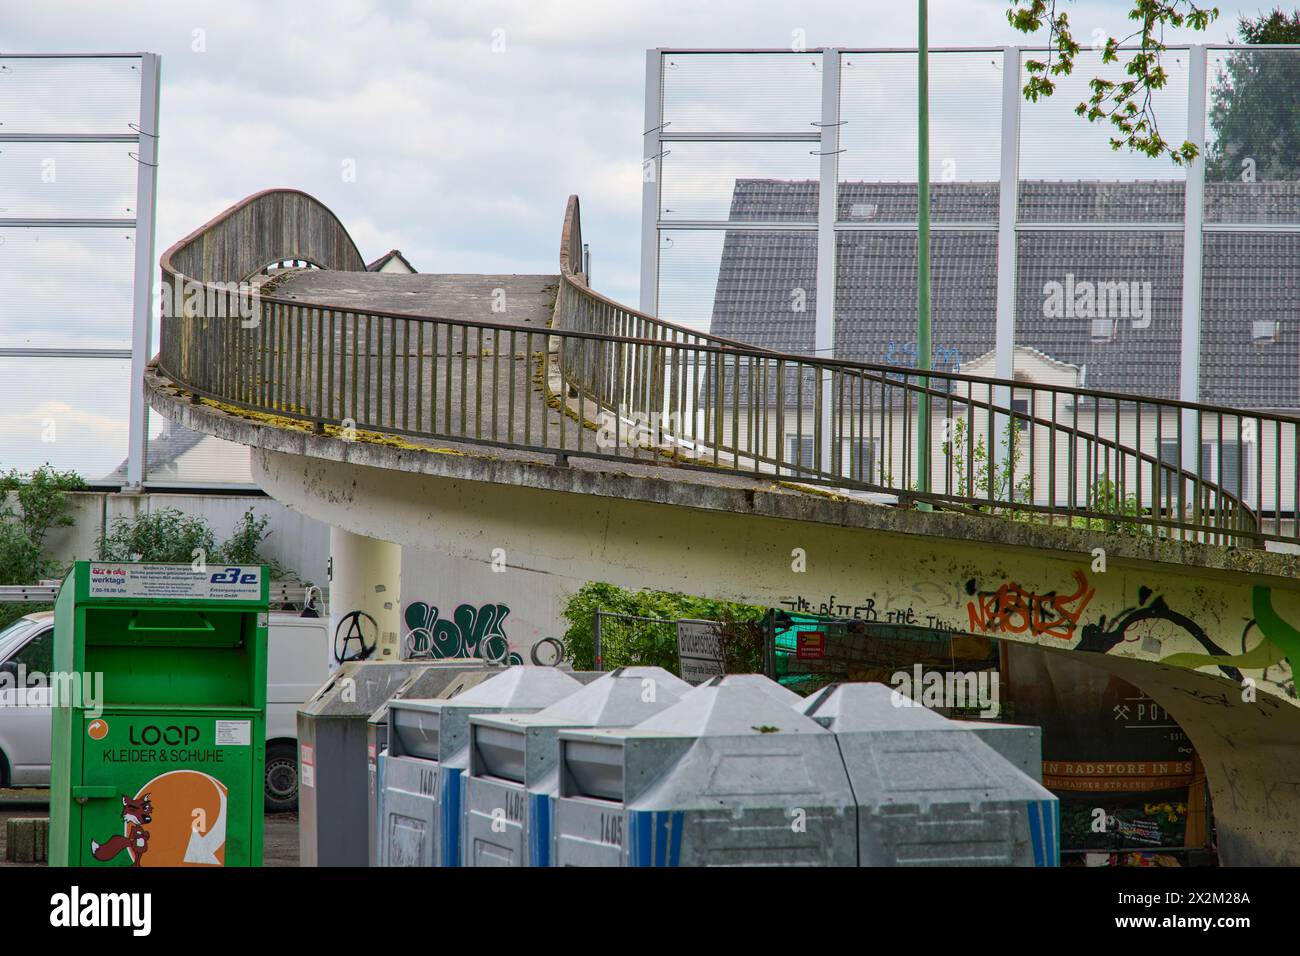 Ende April 2024 soll die Fußgänger Brücke über die A40 in Essen Frillendorf abgerissen werden. Dafür wird an dem Wochenende die A40 gesperrt. Im Verla Stock Photo